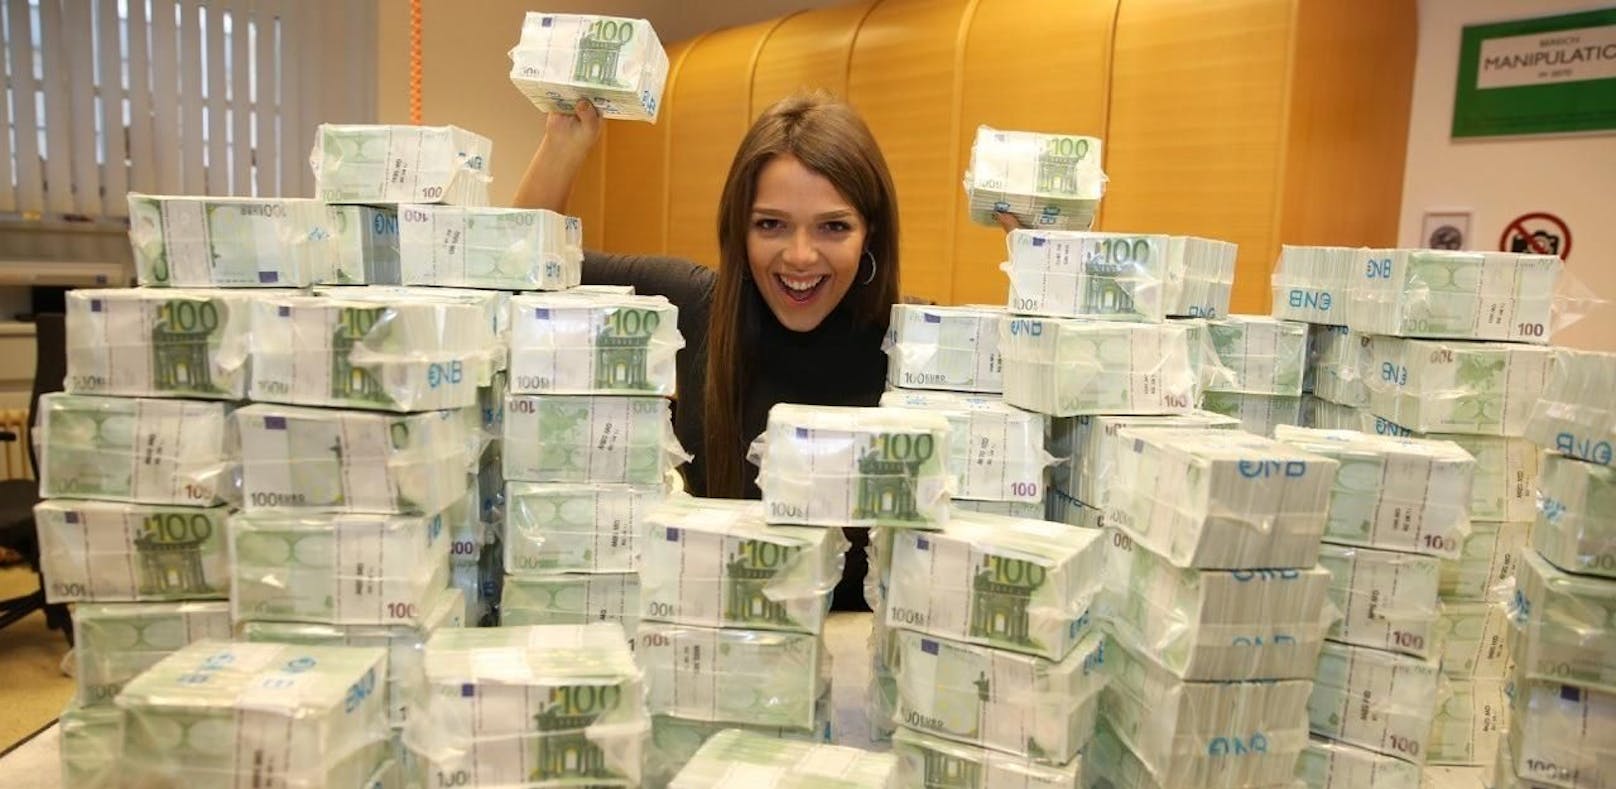 Bei der Lotto-Ziehung am Mittwoch ging es um 7,5 Millionen Euro.